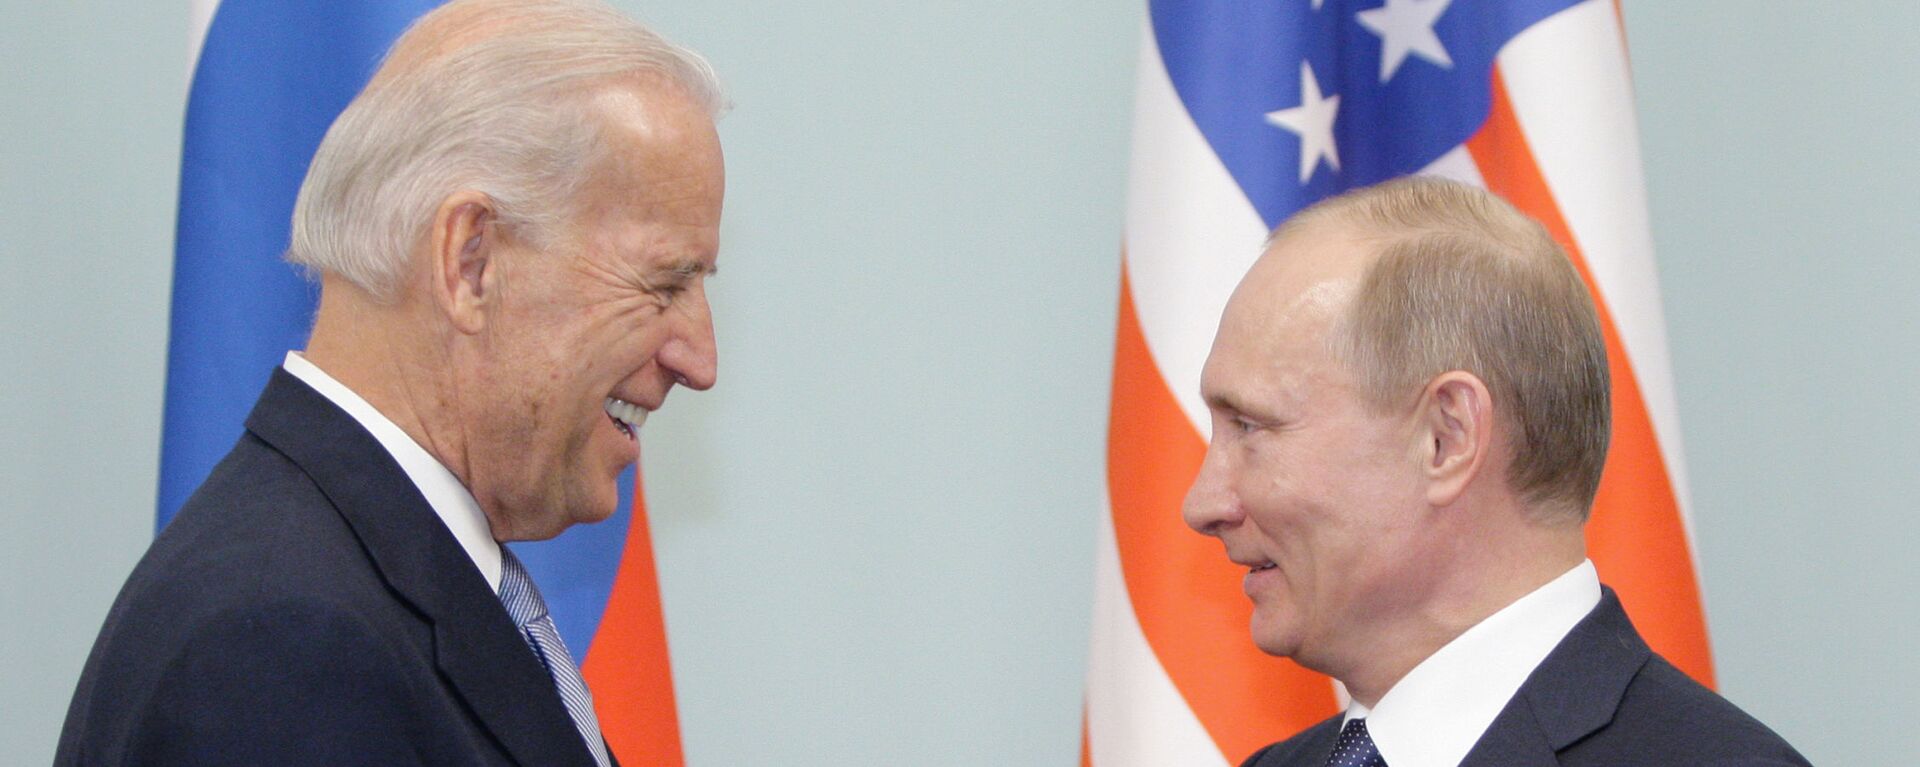 Cuộc gặp giữa thủ tướng Nga Vladimir Putin và phó tổng thống Hoa Kỳ Joe Biden, năm 2011 - Sputnik Việt Nam, 1920, 14.04.2021